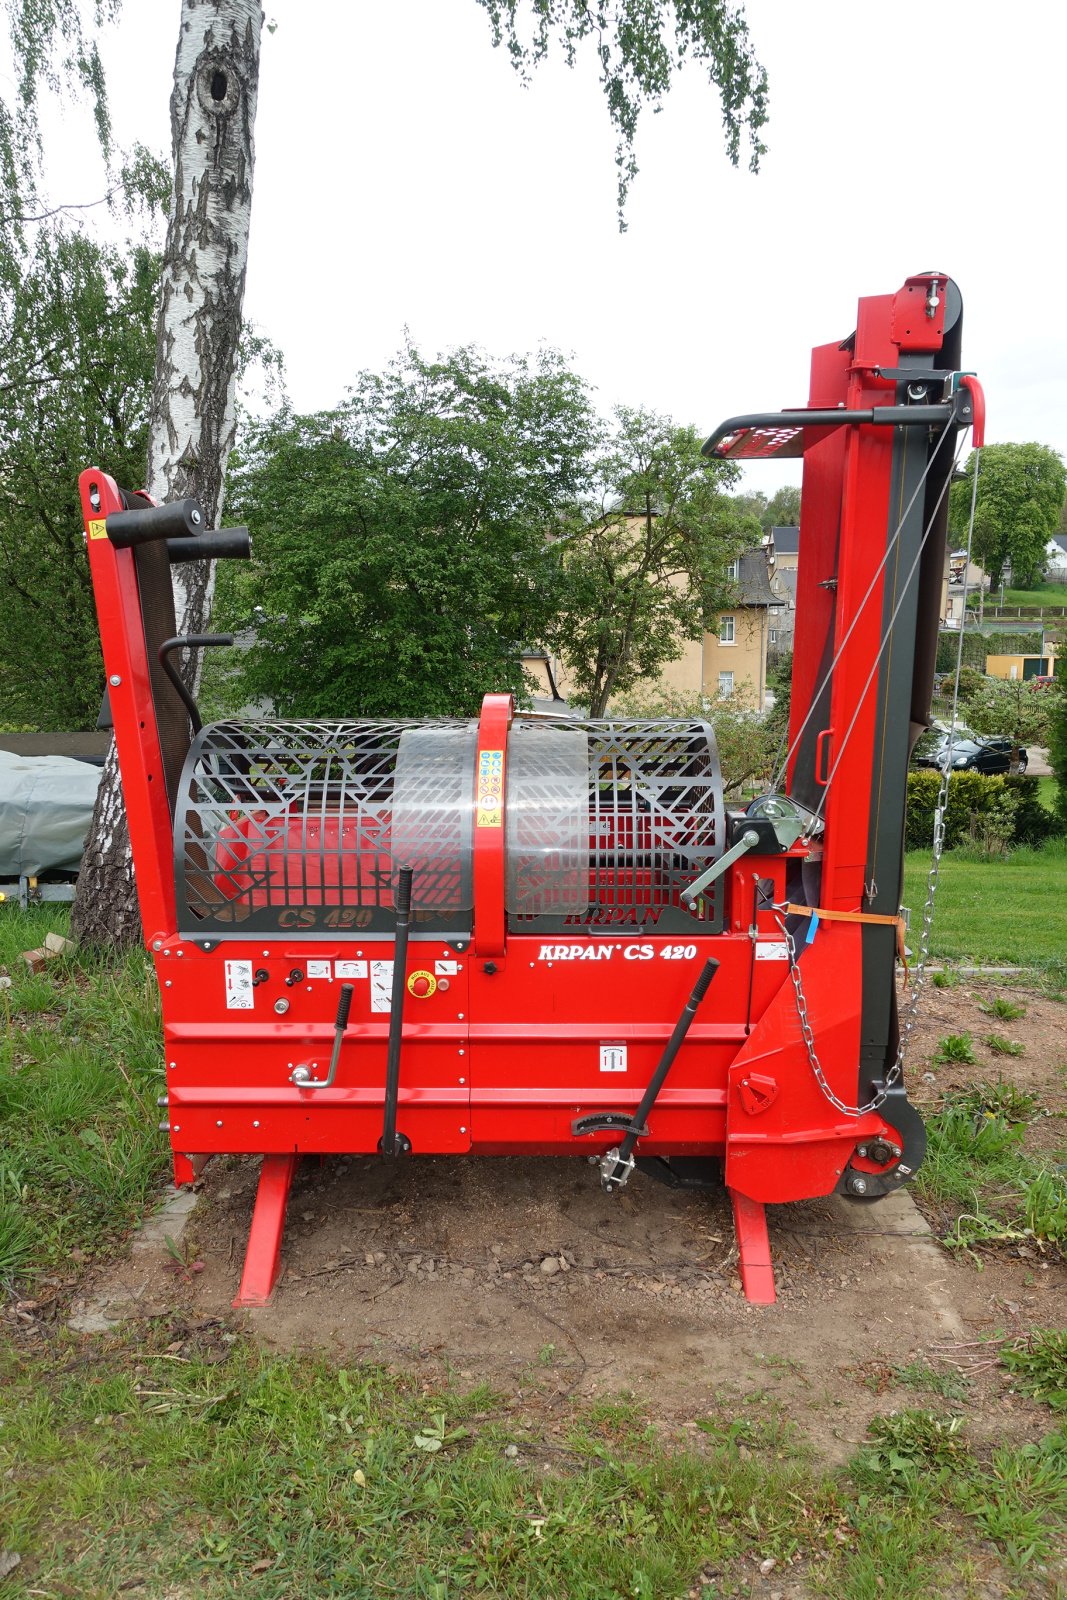 Sägeautomat & Spaltautomat des Typs Krpan CS 420, Gebrauchtmaschine in Lugau (Bild 2)